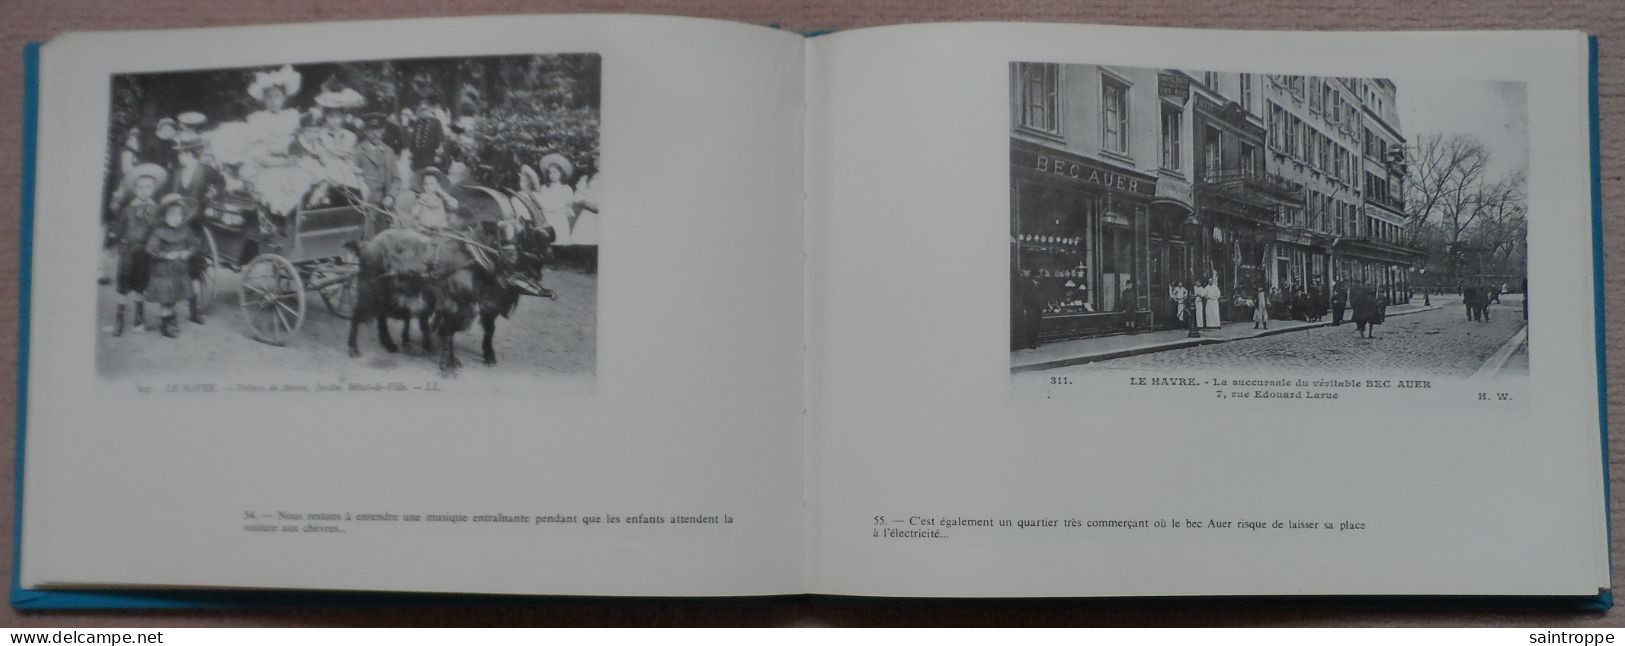 "LE HAVRE à la BELLE époque".Reproduction de 123 cartes postales.Régionalisme.